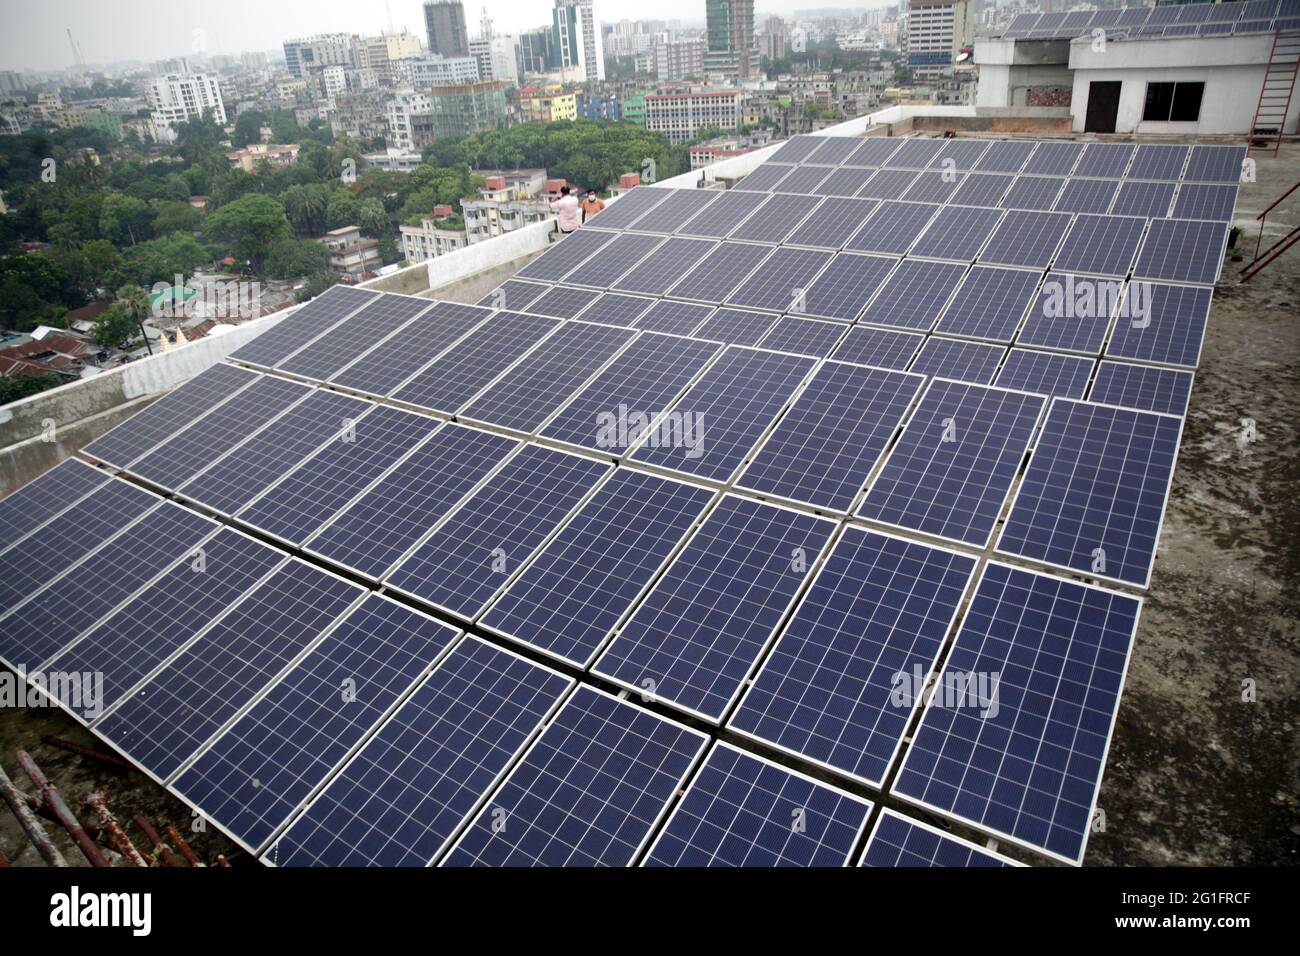 Juin 07 2021.Dhaka, bangladesh,l'énergie solaire apporte plus d'électricité au réseau que toute autre forme d'énergie – un exploit mené davantage par la ce Banque D'Images